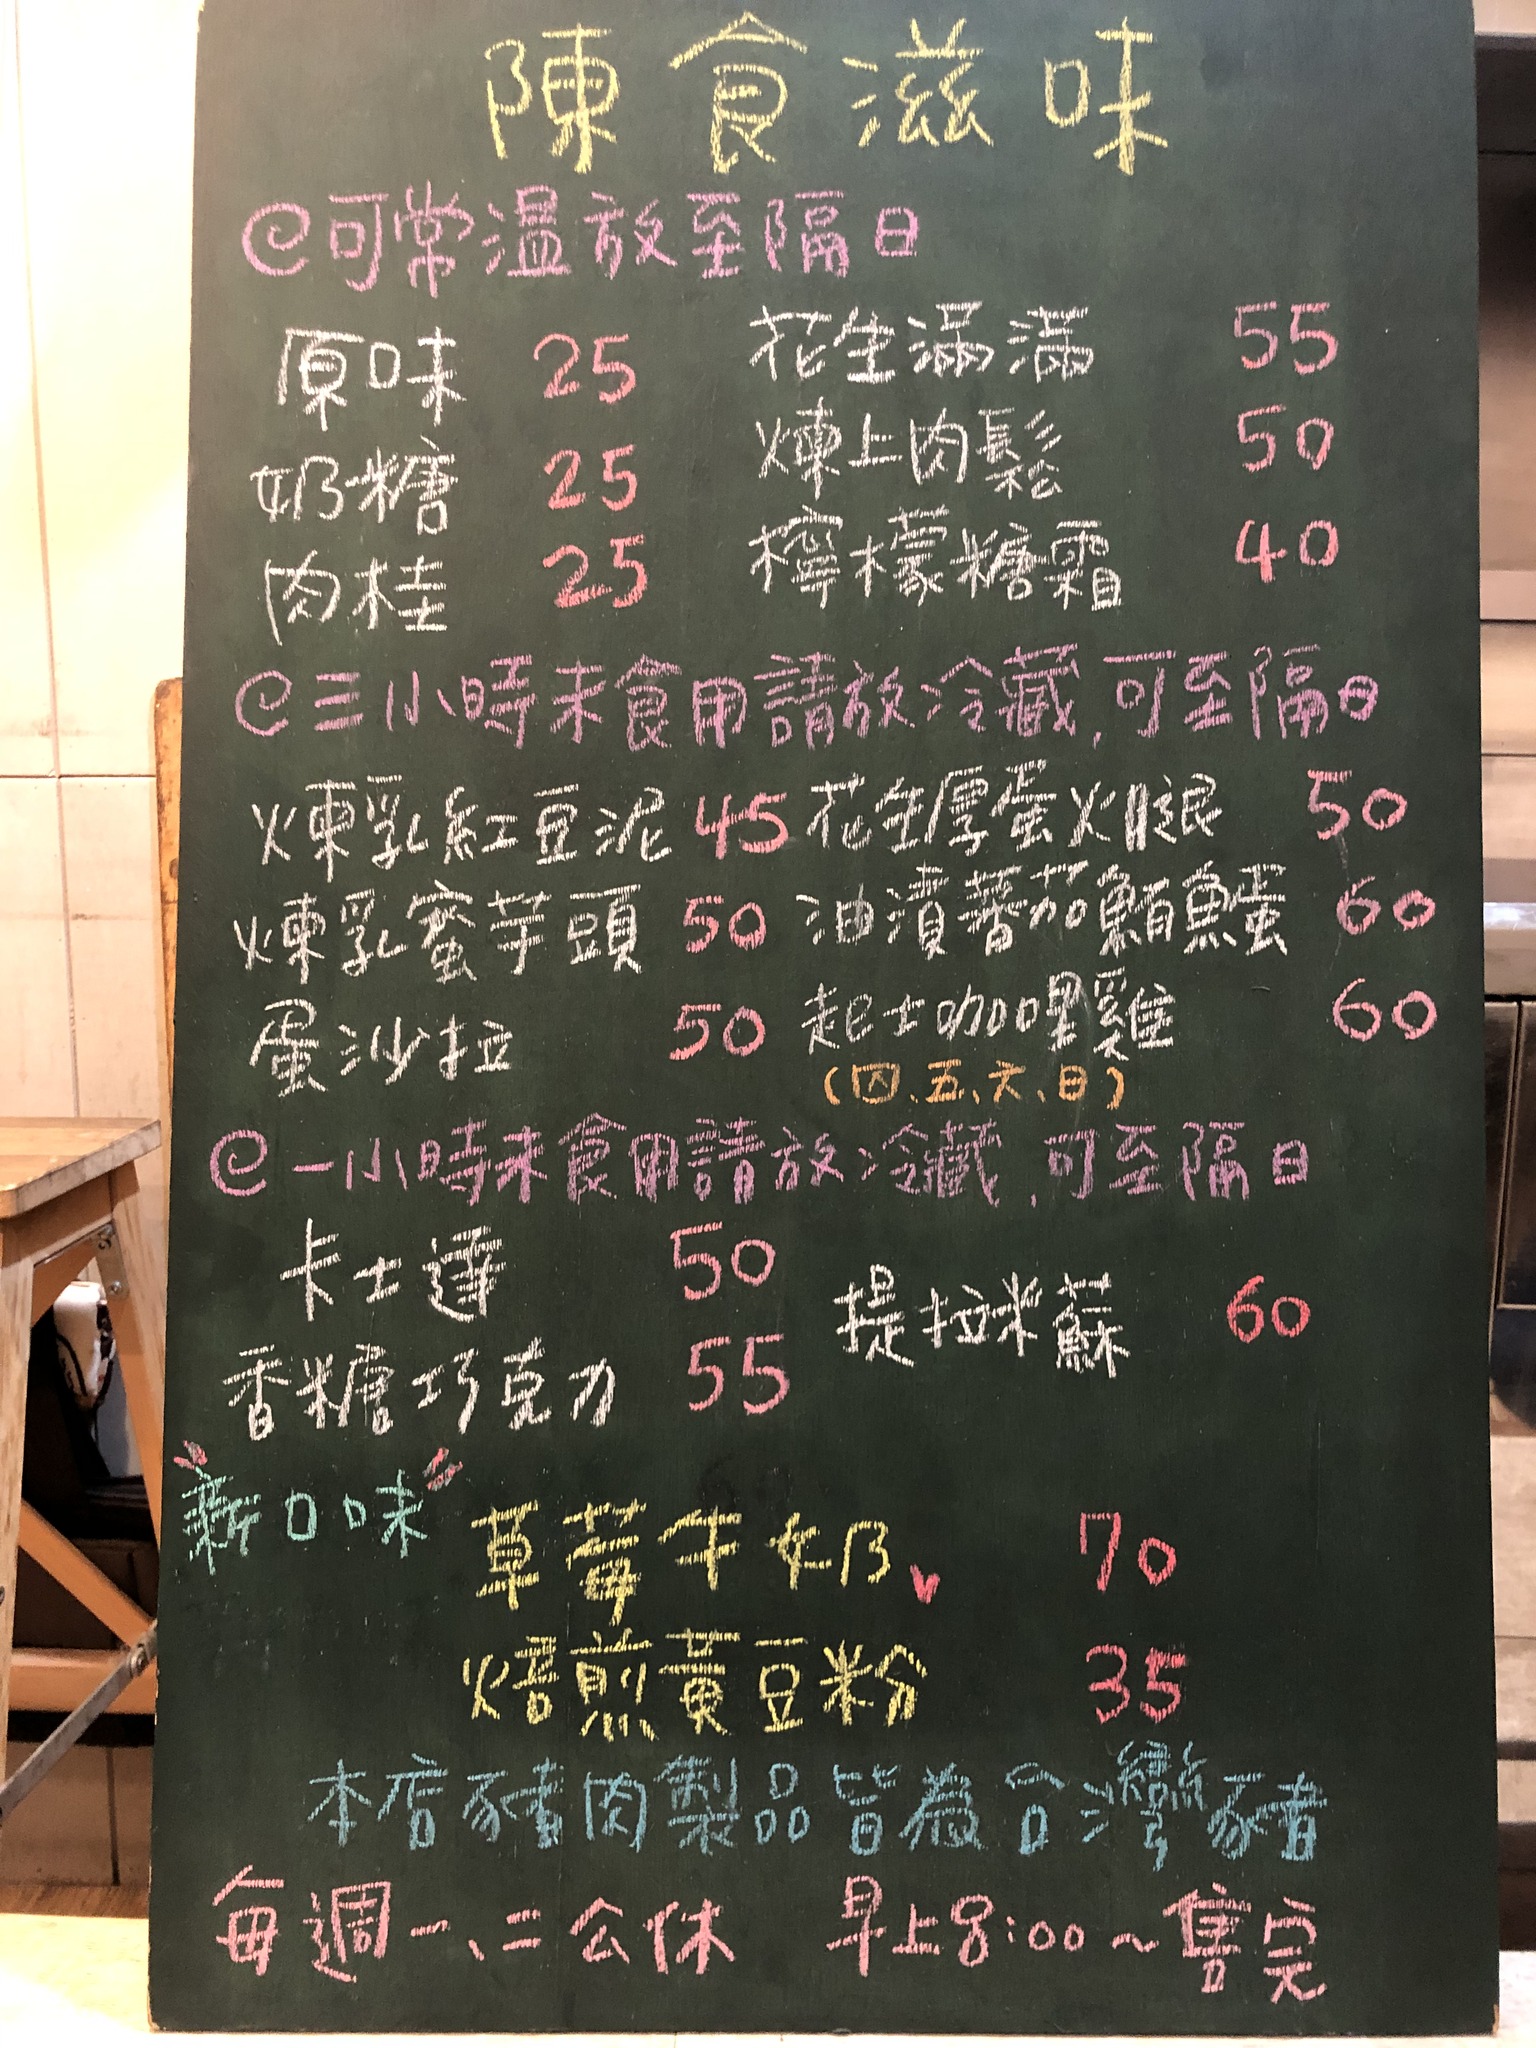 陳食滋味｜選用日本昭和麵粉製作甜甜圈一顆25元超熱賣(菜單) @女子的休假計劃